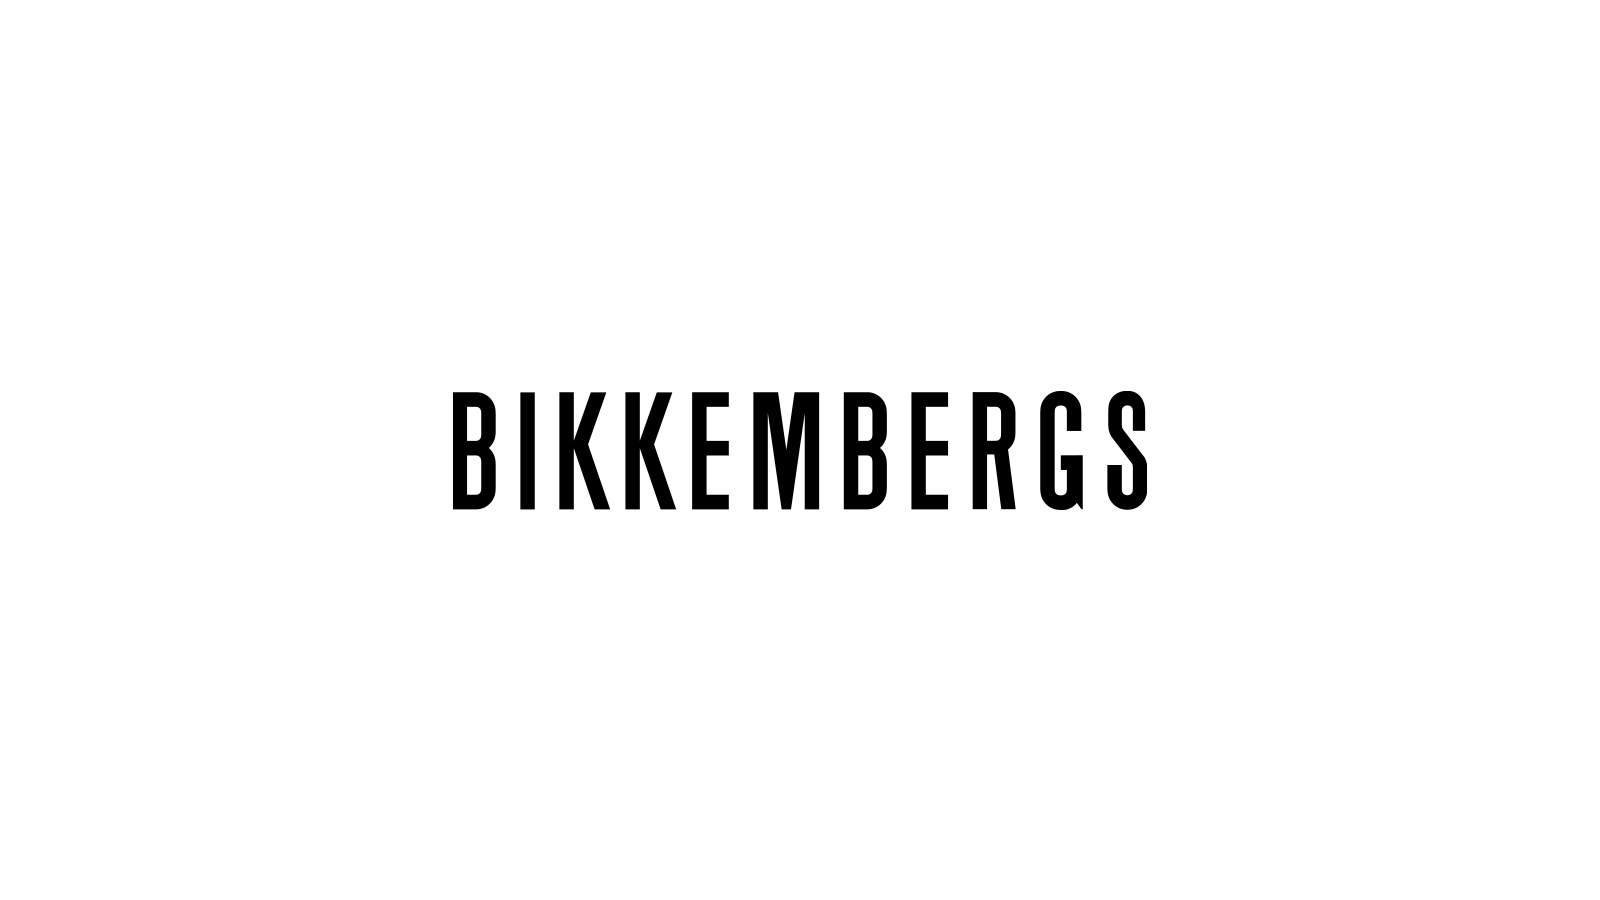 Bikkembergs – Early Morning